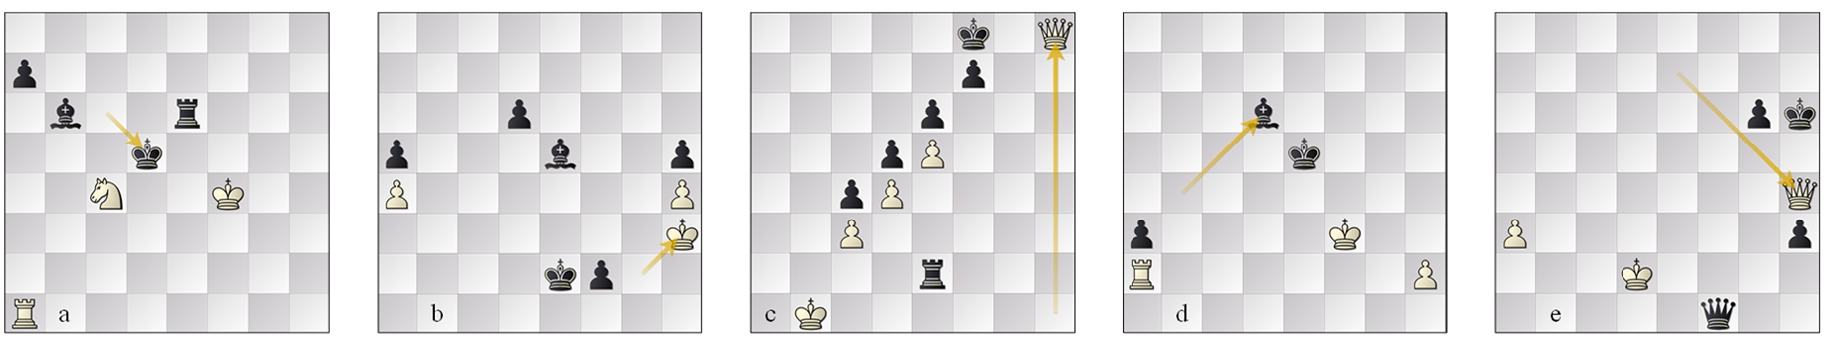 L3 (a) g35 Seer–Weiss 60.Nxb6??, (b) g75 Marvin–Pirarucu 67...f1=Q(/B)#; L2 (c) g17 Seer–Defenchess 67...Ke7 force, (d) g24 Defenchess–Winter RP-bp win, (e) g49 Nemorino-Minic 76...Kg7 force.